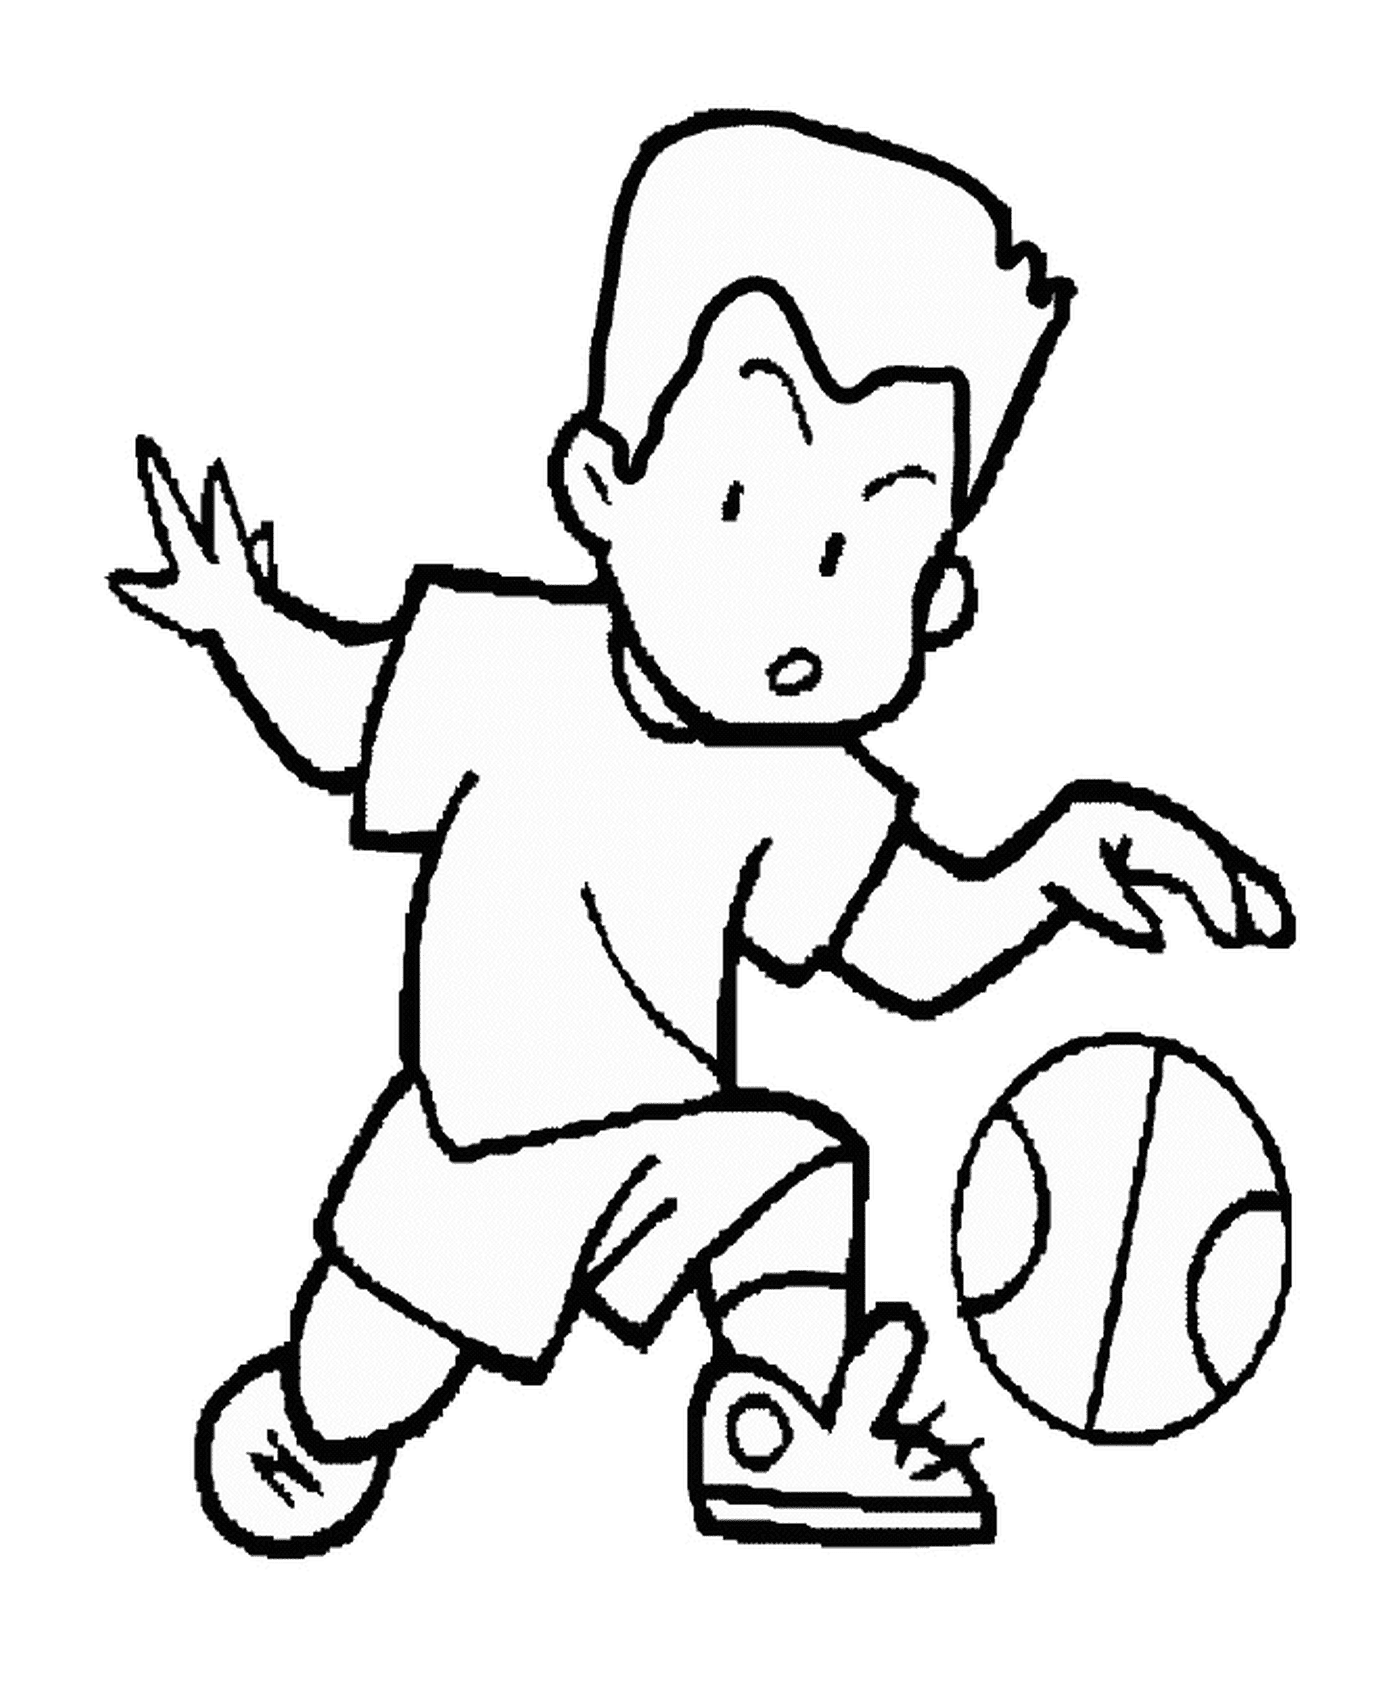  Uma criança com uma bola de basquete 